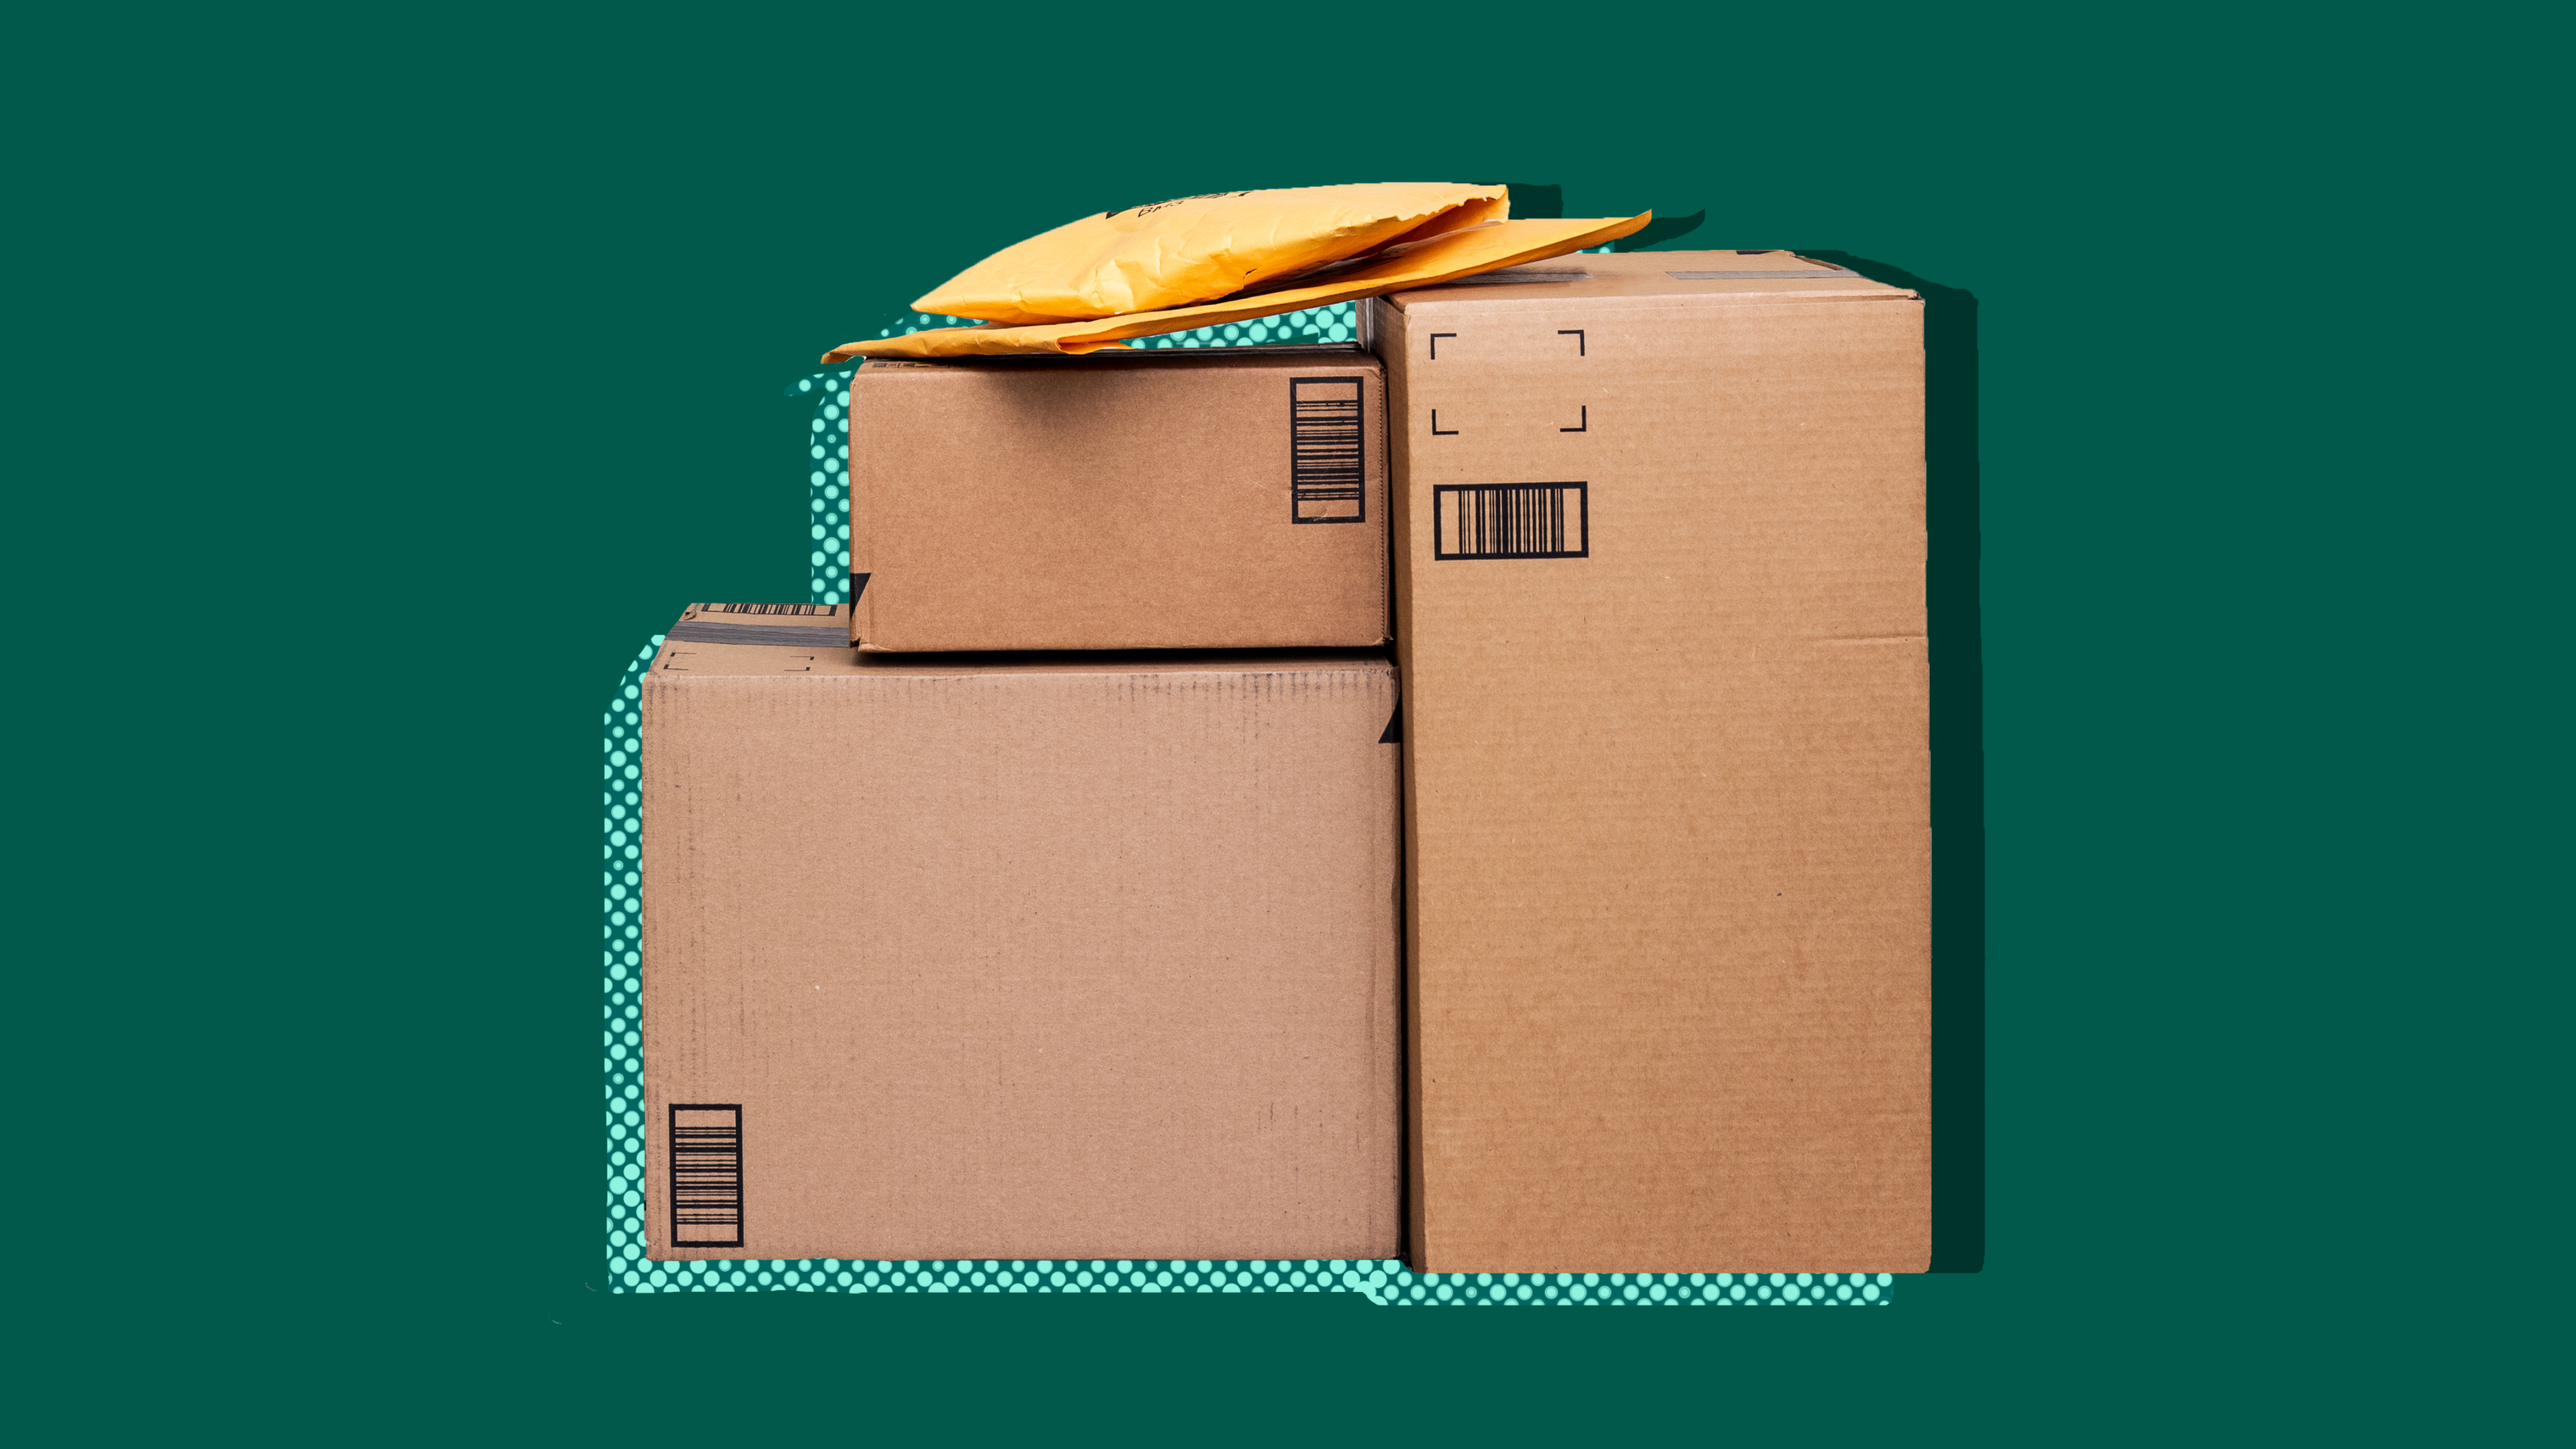 Delivered packages